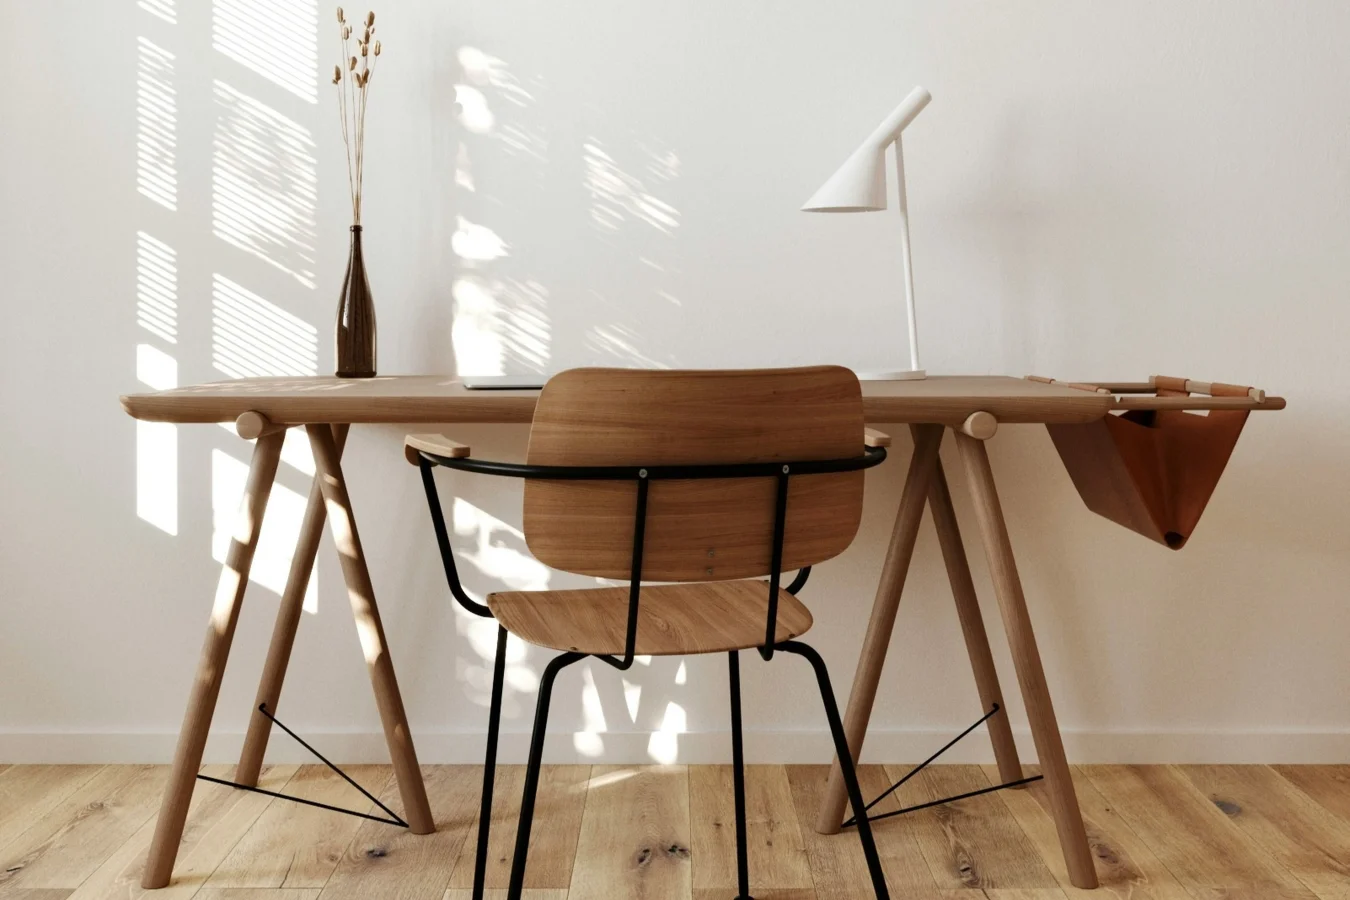 Oparcie krzesła z giętej sklejki sprawdza się przy prostym, skandynawskim biurku.